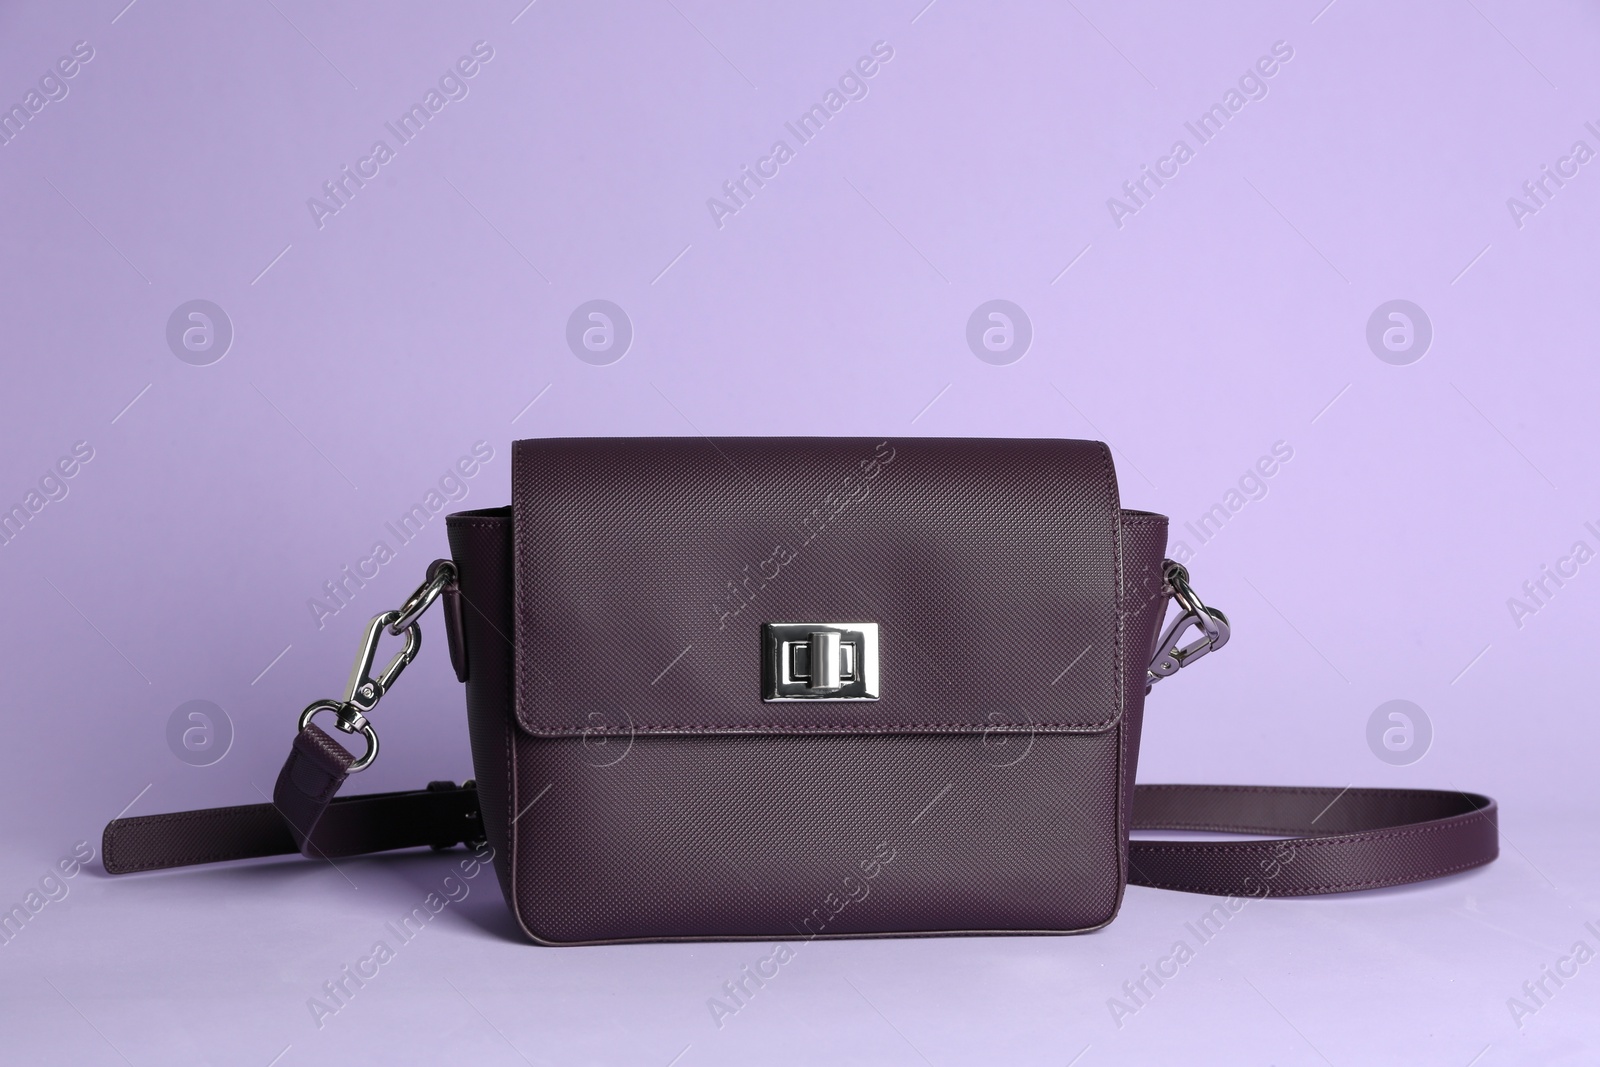 Photo of Stylish elegant woman's bag on lilac background